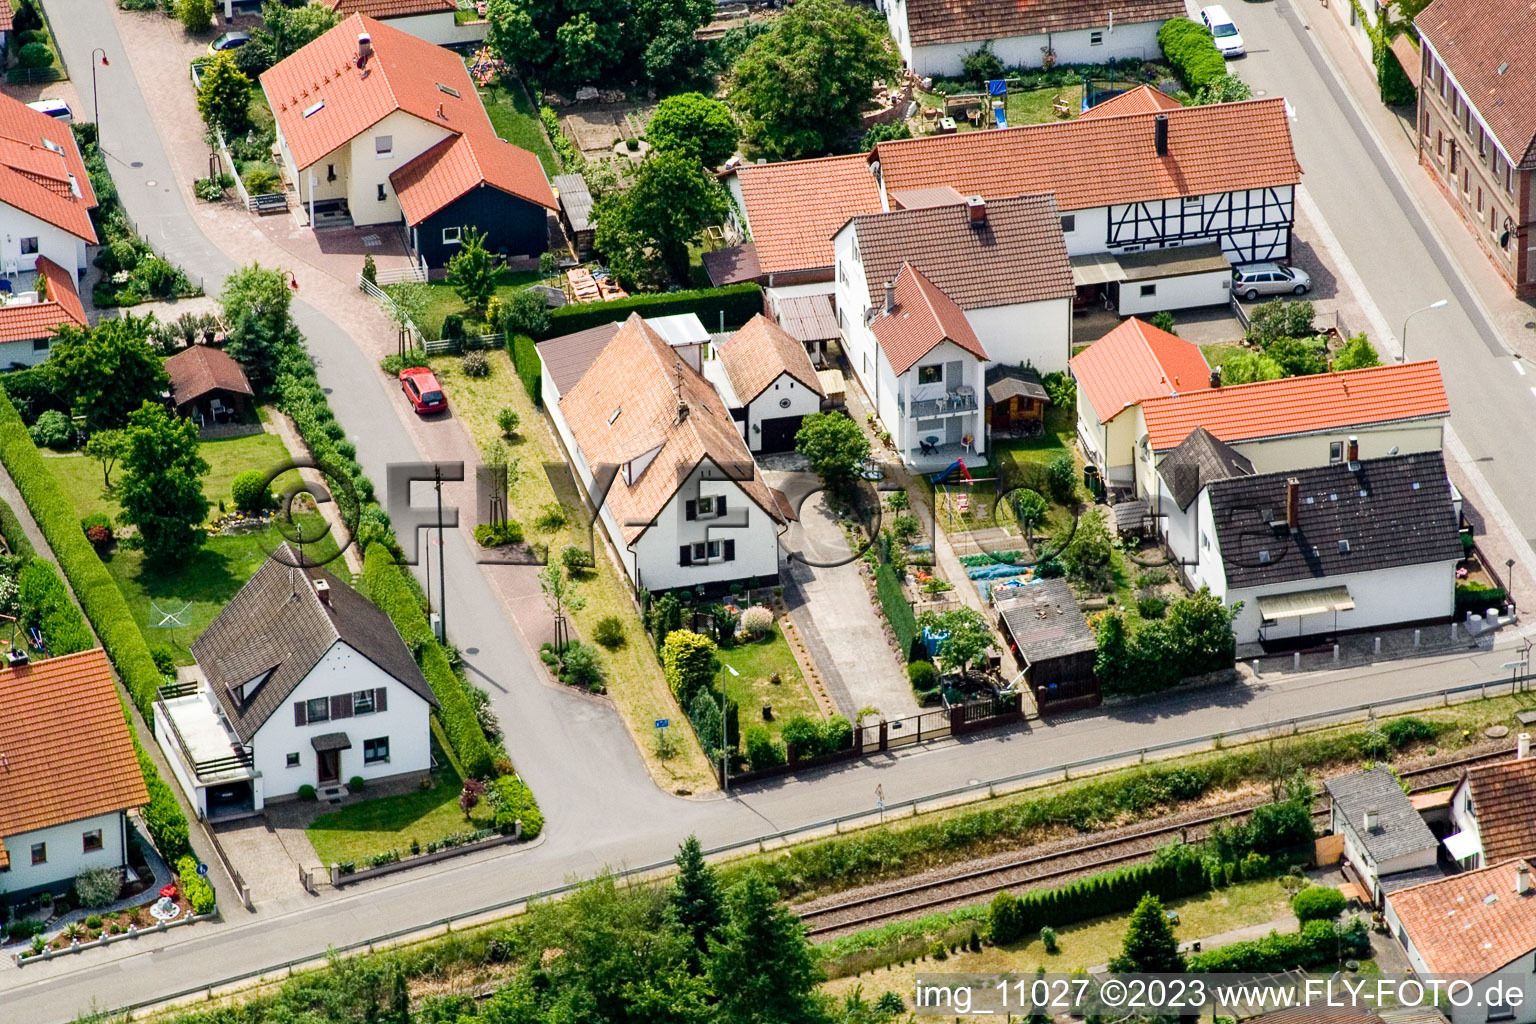 Barbelroth im Bundesland Rheinland-Pfalz, Deutschland von der Drohne aus gesehen